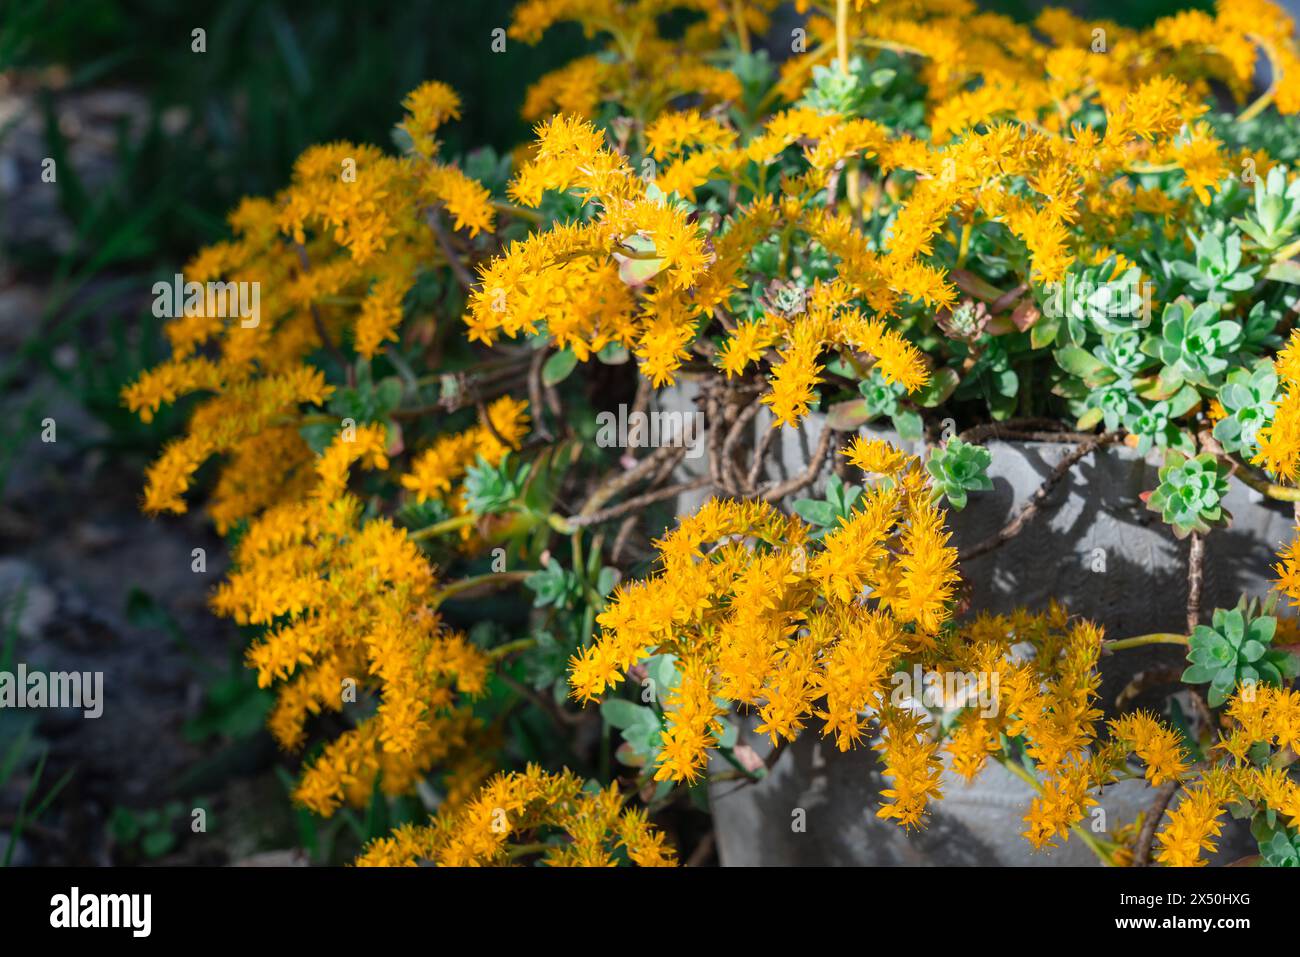 Succulent plant Sedum Palmeri flowering Stock Photo